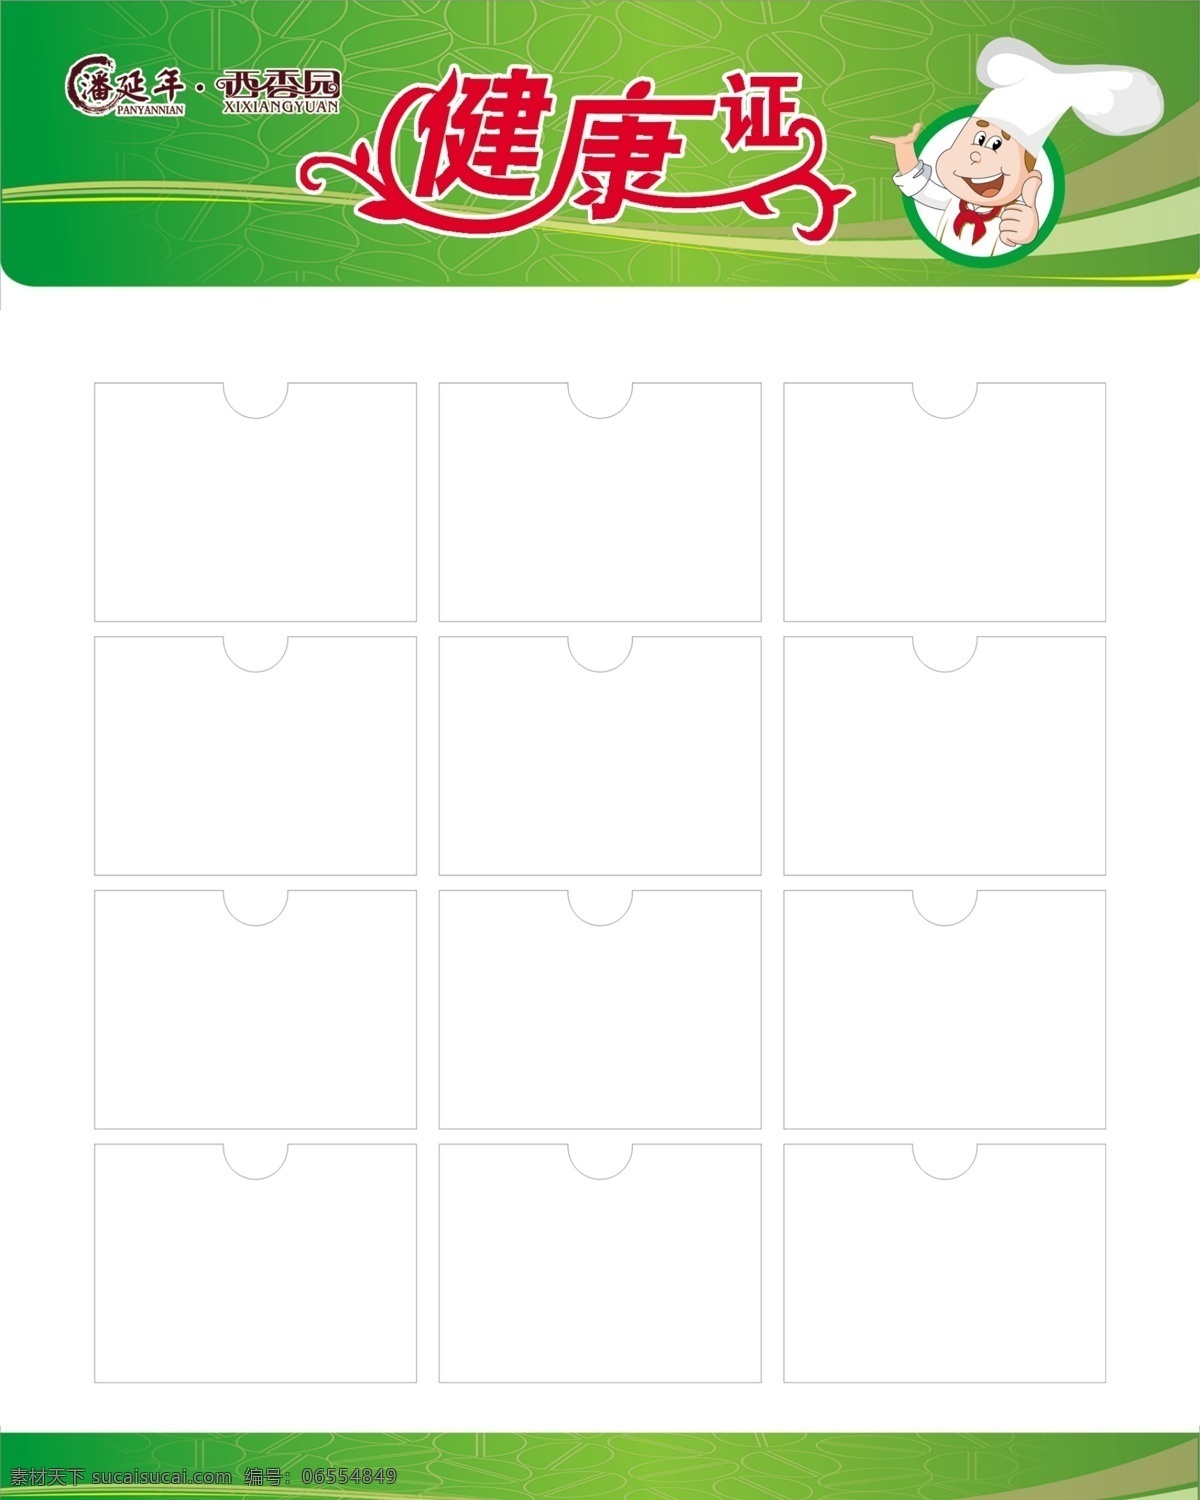 健康证 西香园 健康证公示牌 绿色背景 蛋糕师 psd素材 展板模板 广告设计模板 源文件